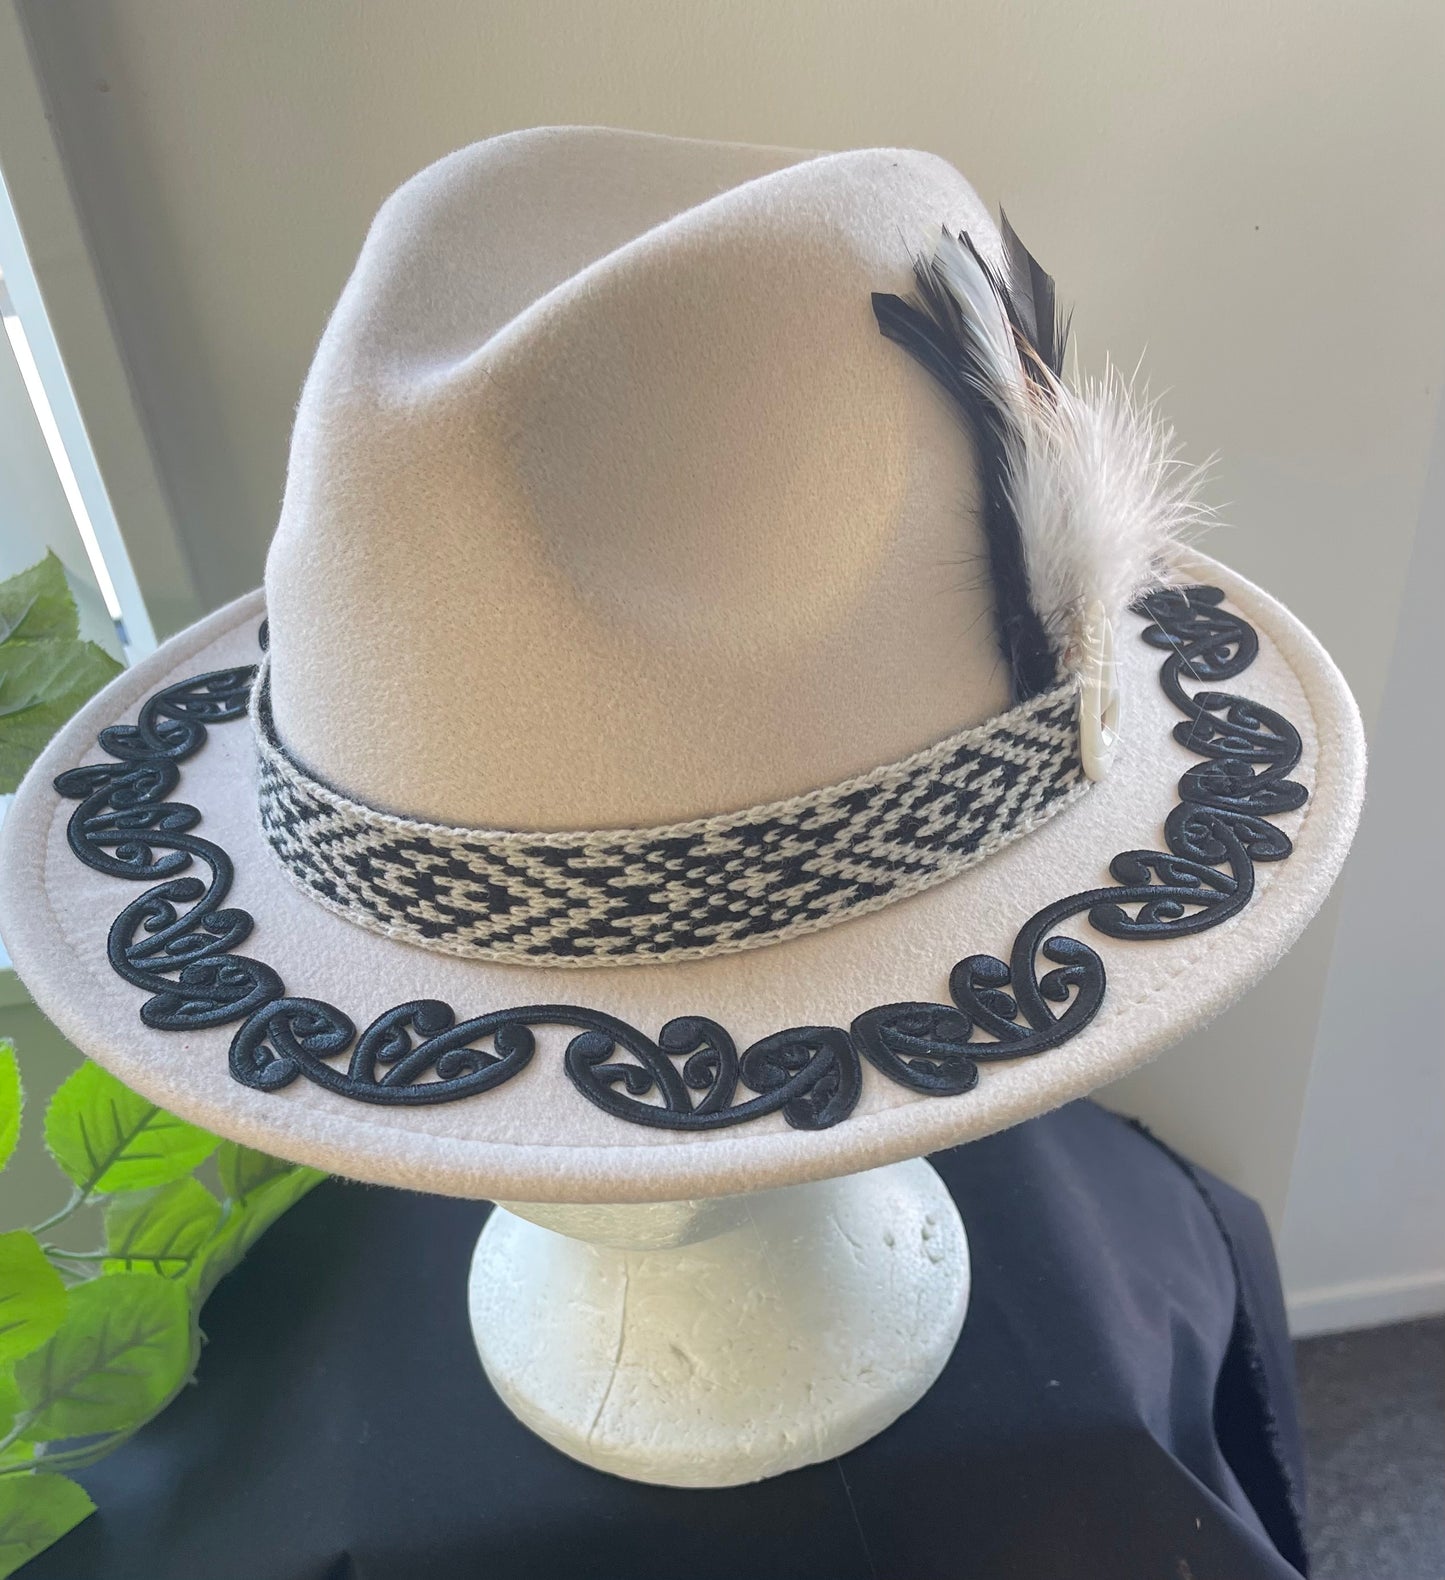 Potae - Beige Fedora Felt Hat